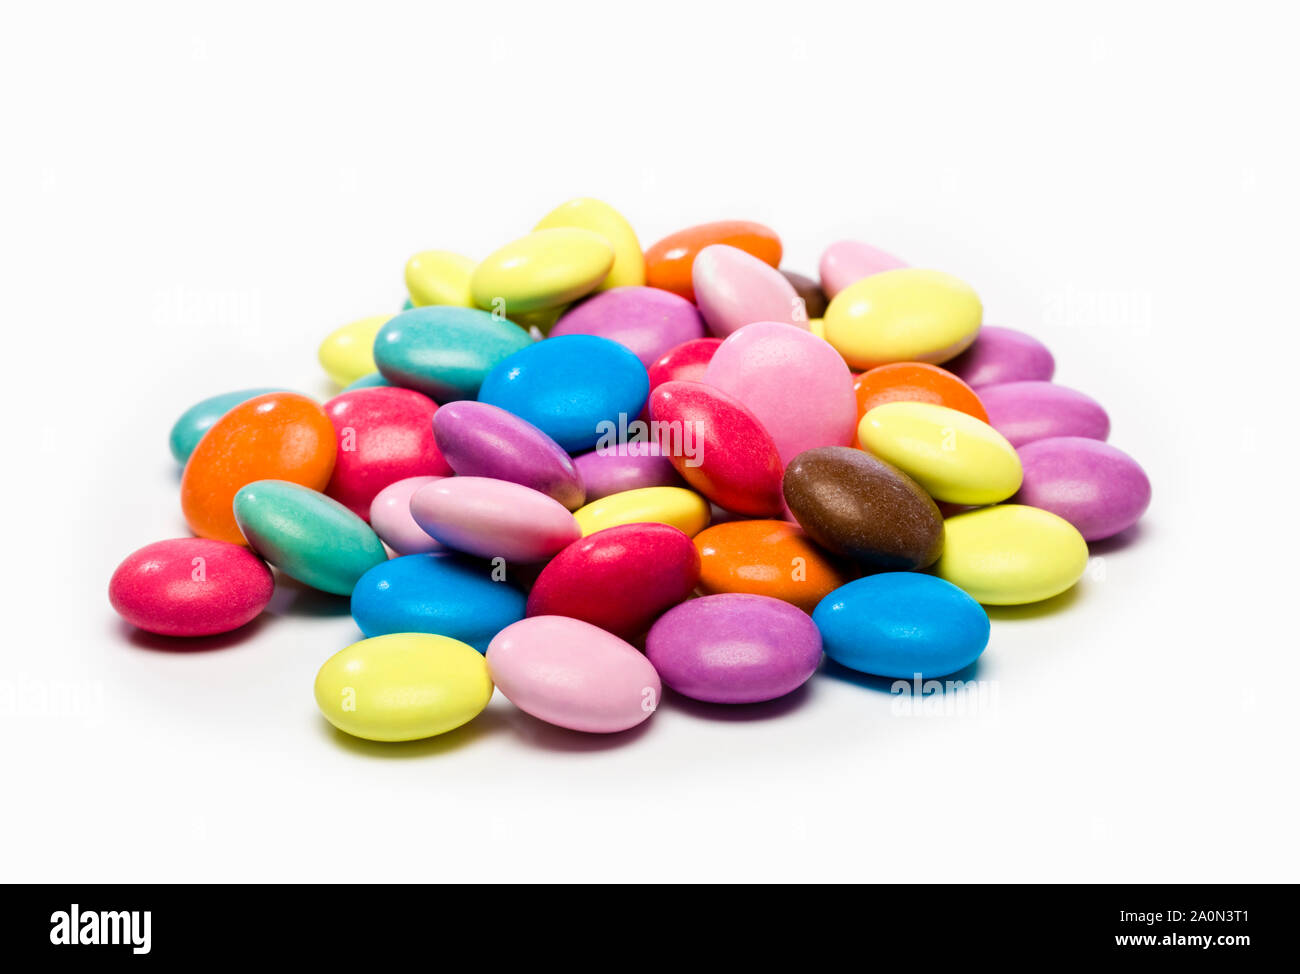 Stapel von bunten Süßigkeiten Süßigkeiten Stockfoto